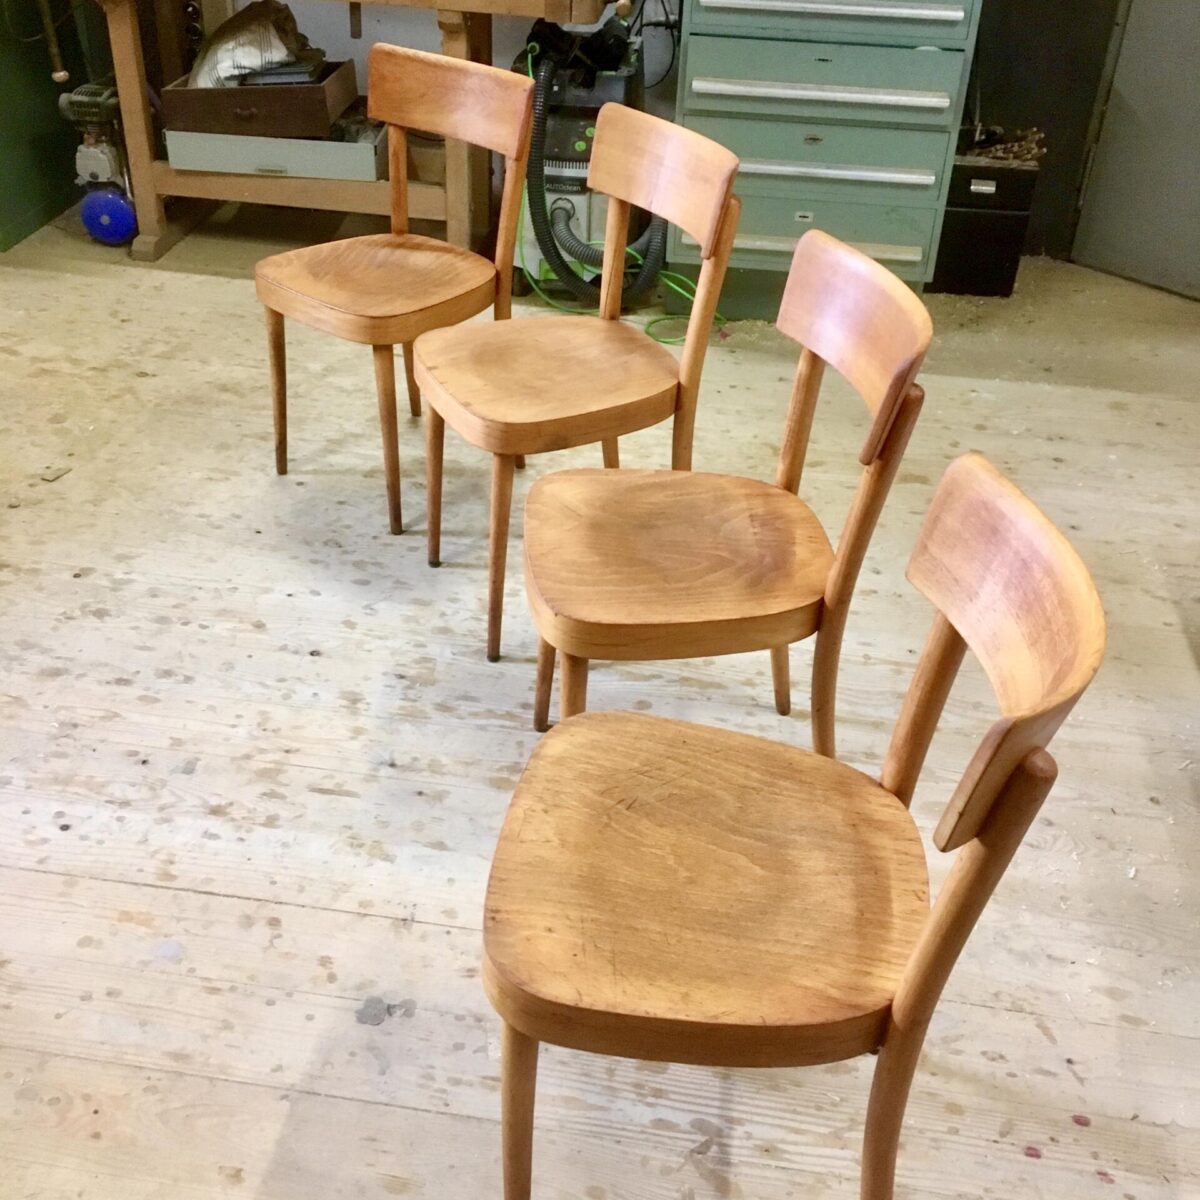 4 Beizenstühle von Keusch und Sohn. Buchenholz Stühle mit runden Beinen. Matte rötlich braune Patina. 